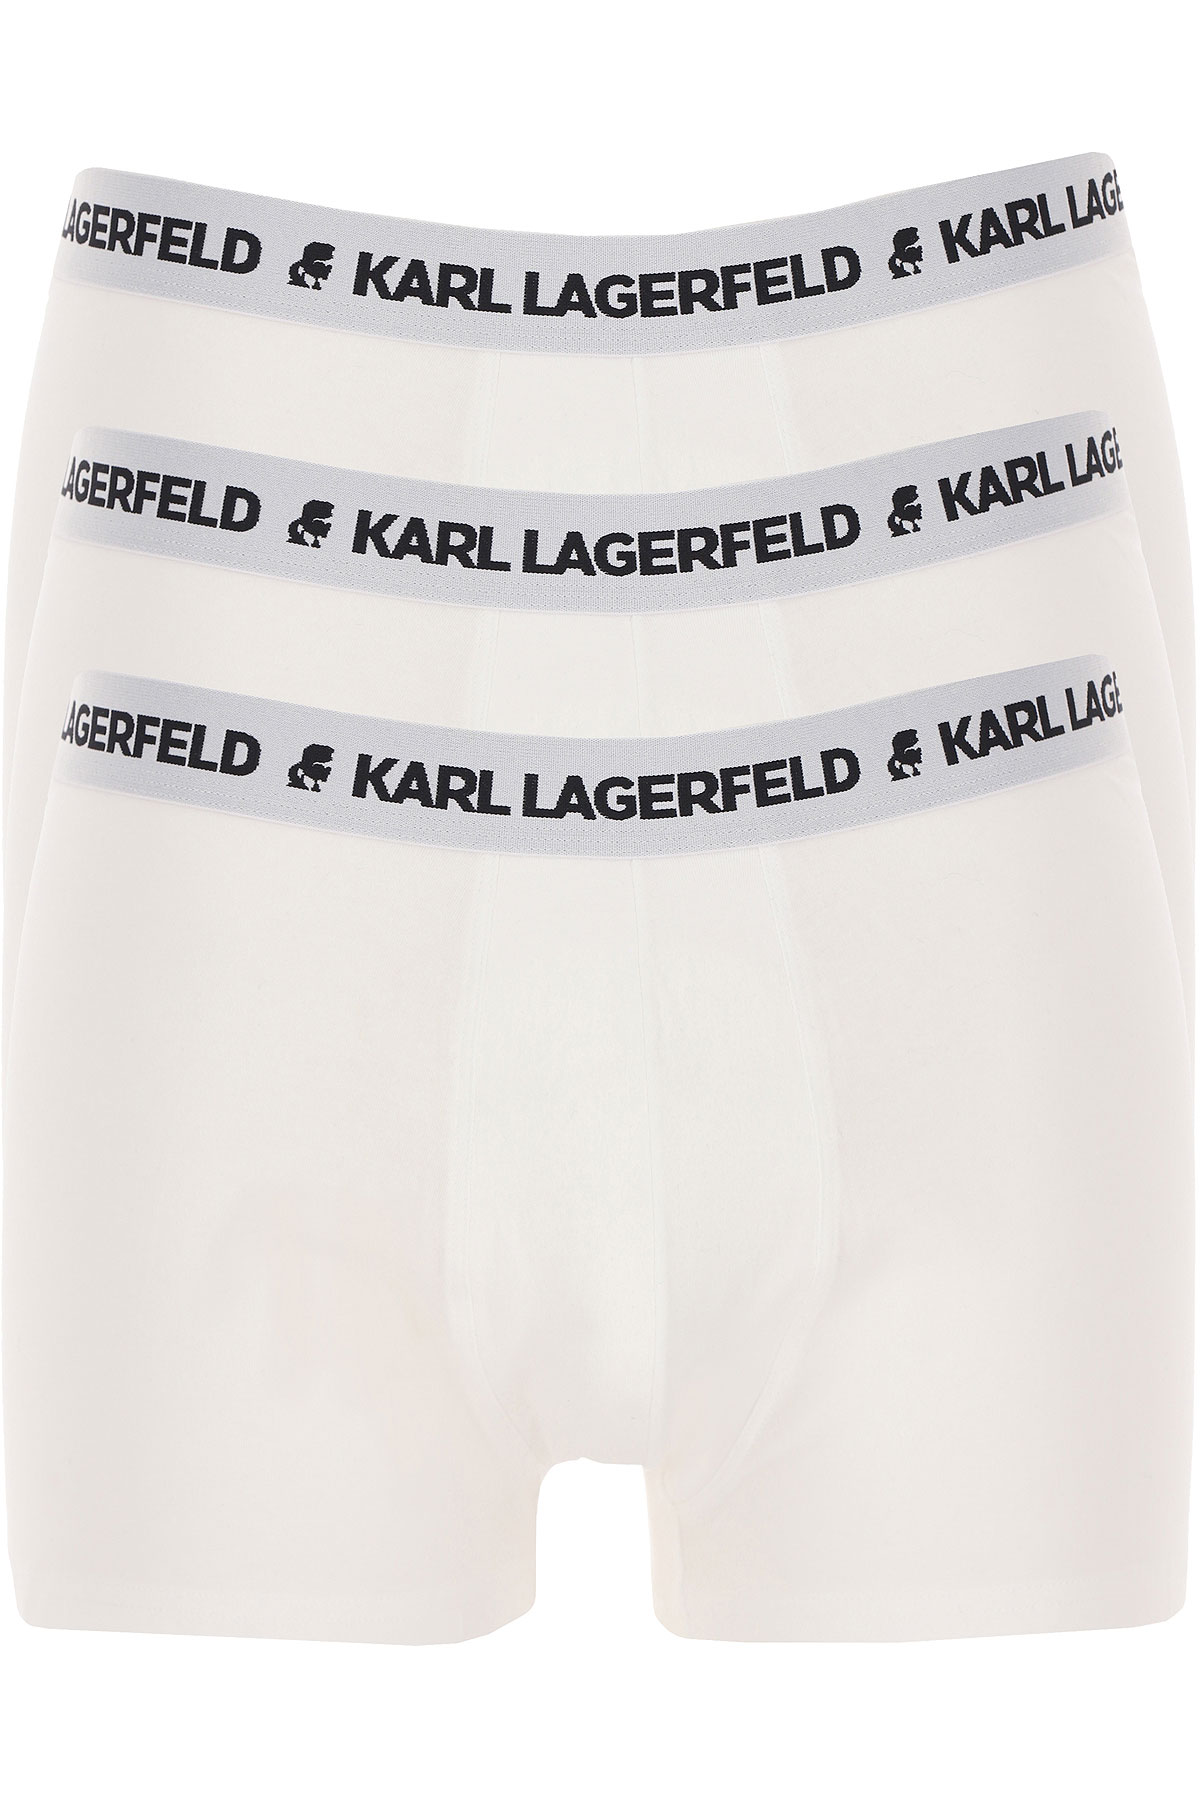 uitspraak Ontkennen Lezen Mens Underwear Karl Lagerfeld, Style code: 211m2102-100-